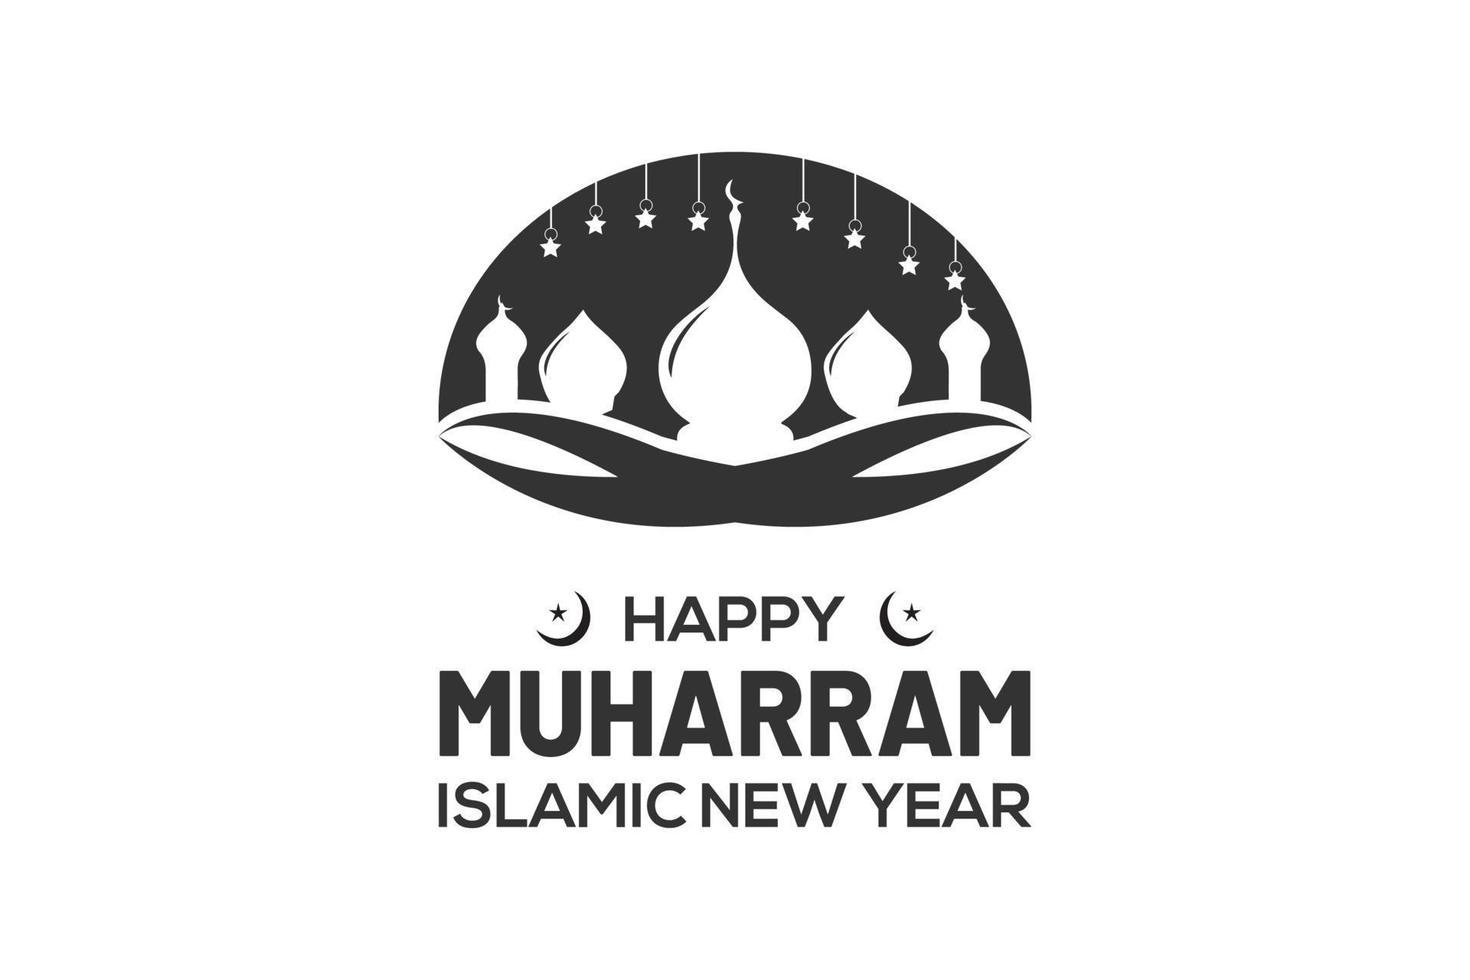 ramadan kareem design. ramadan logotyp. arab logotyp mall. islamic logotyp design. eid mubarak vektor